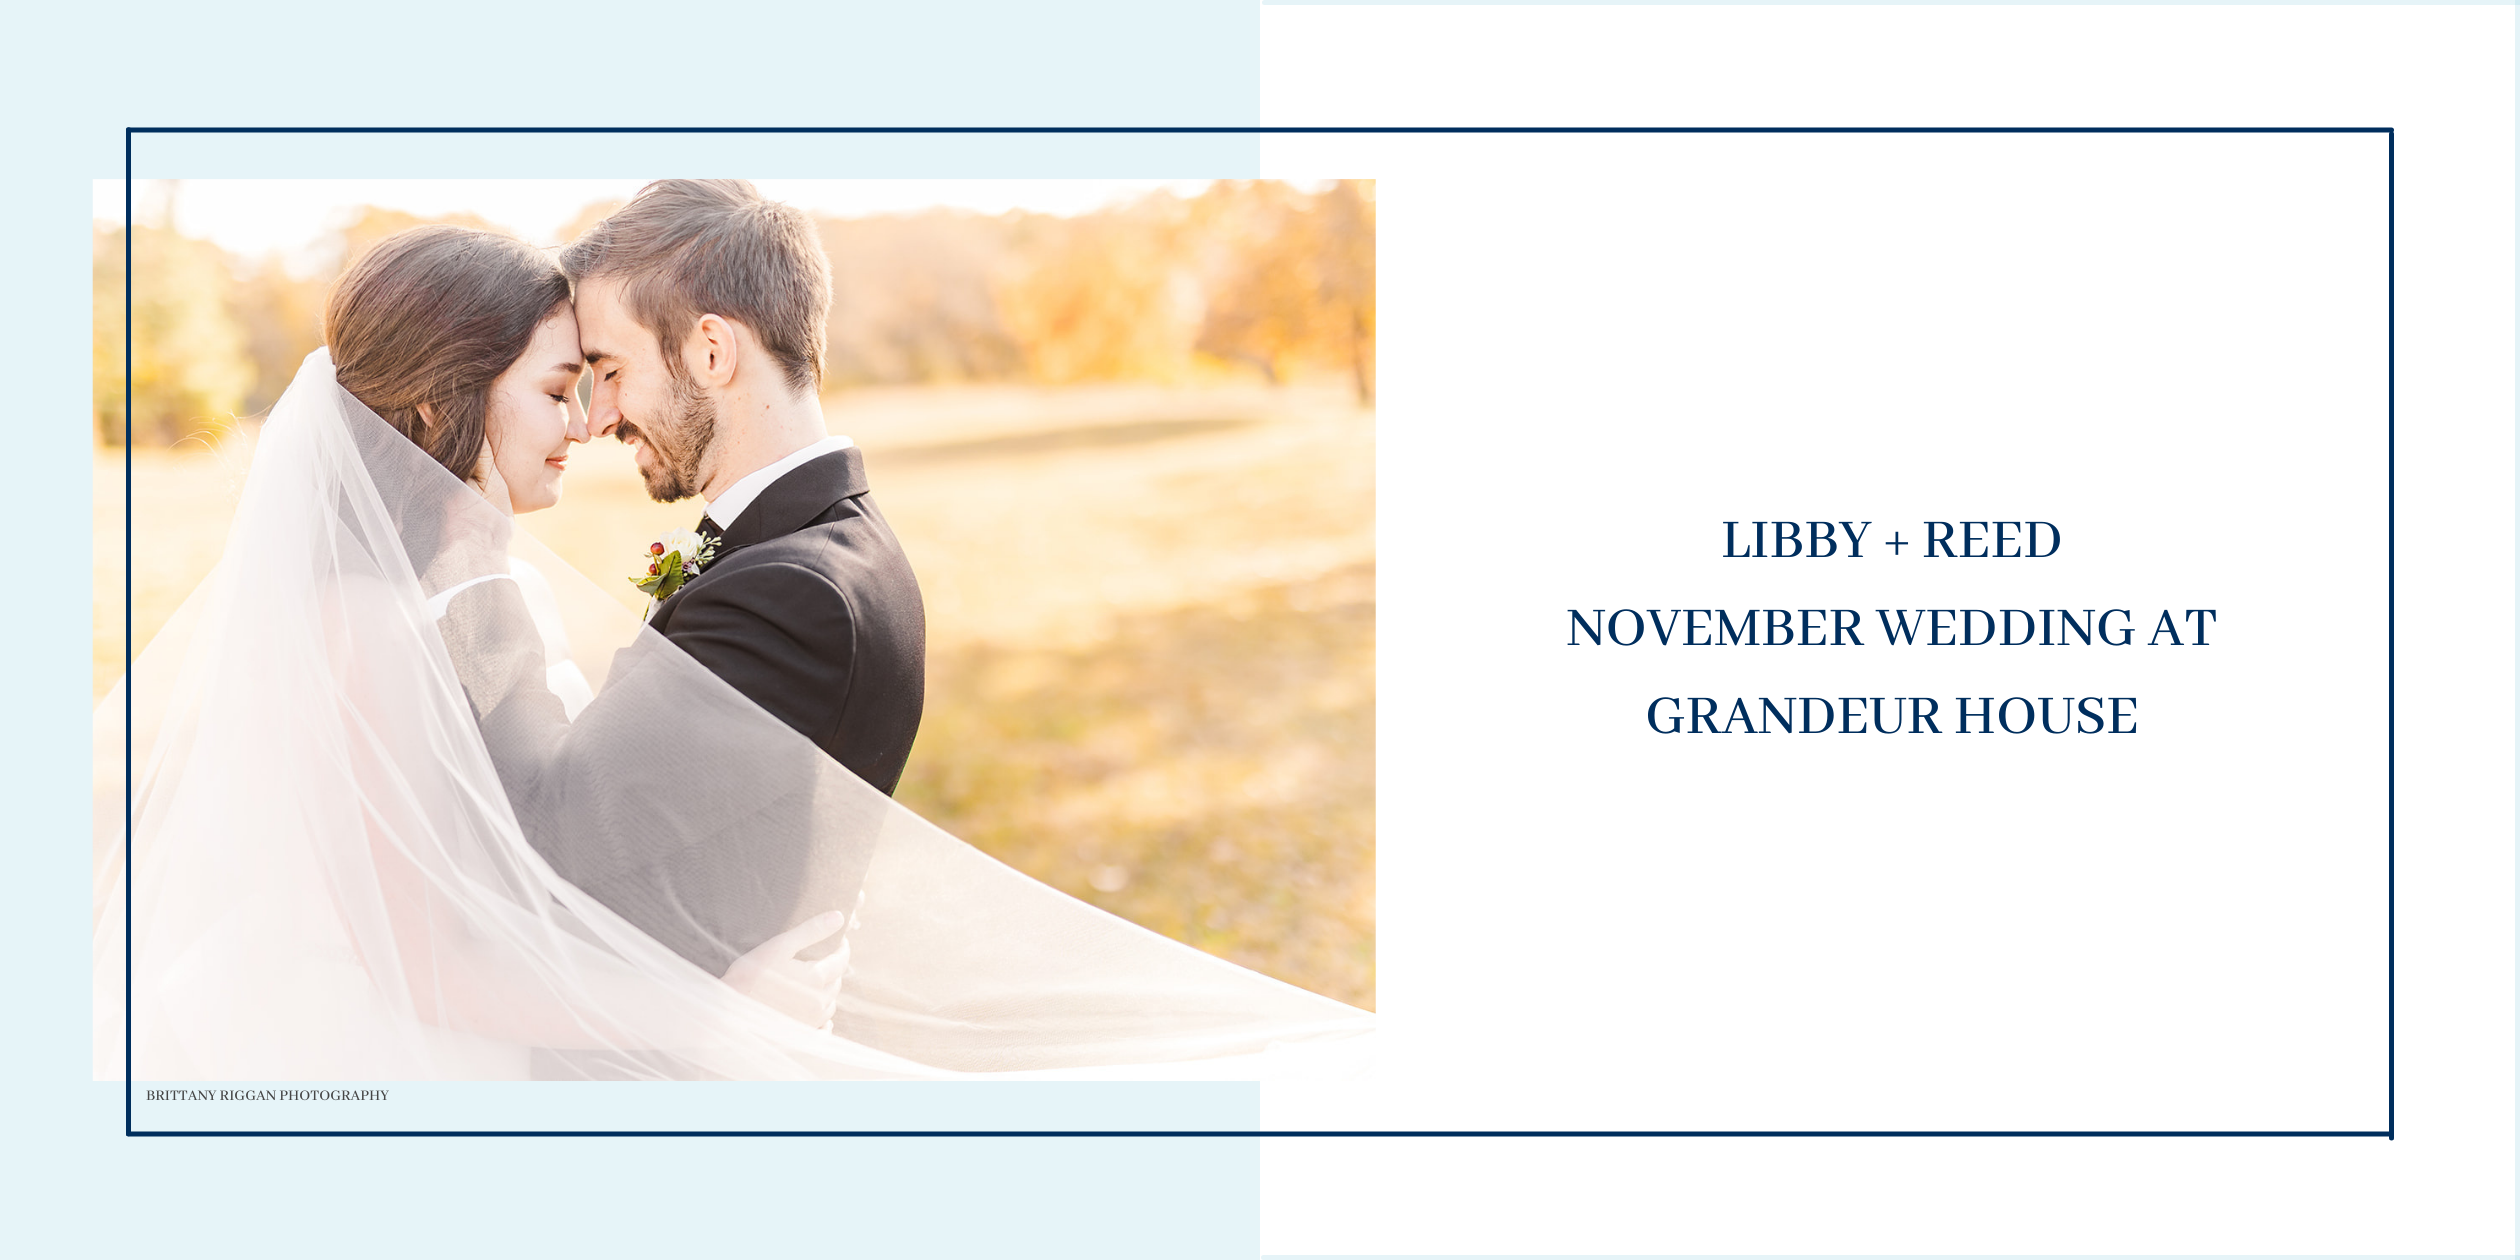 Libby and Reed | November wedding at Grandeur House | Brittany Riggan Photography